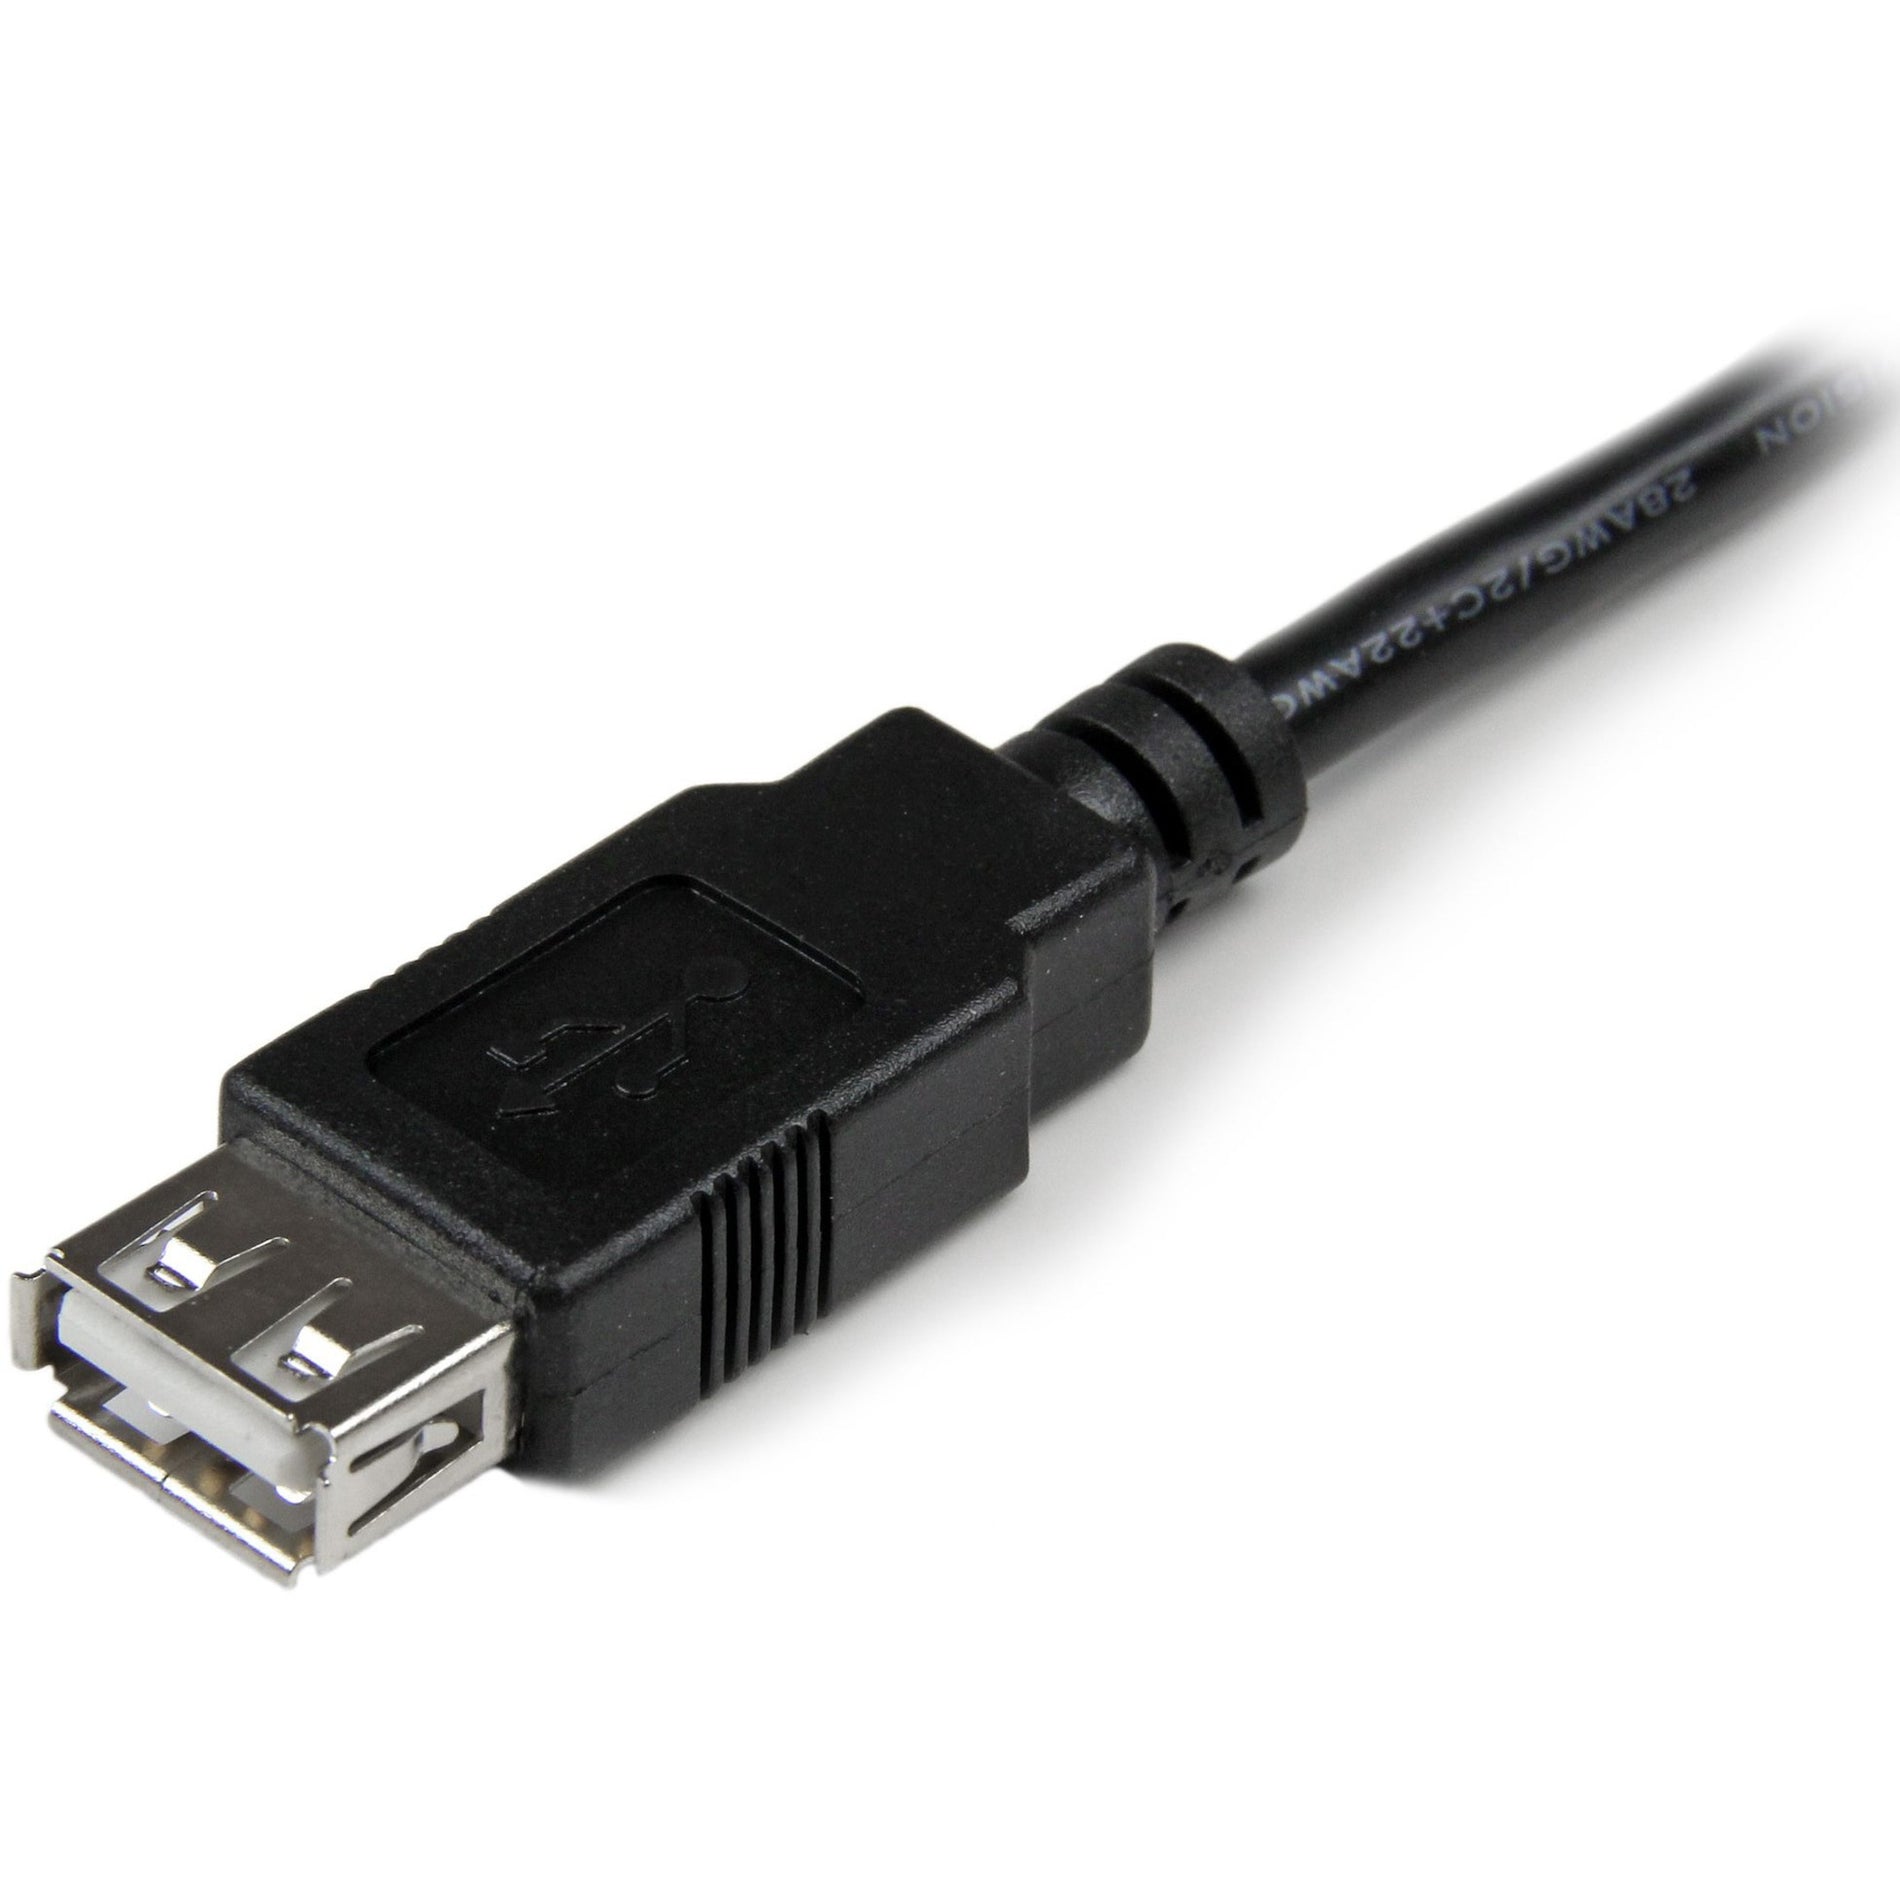 Marca: StarTech.com  StarTech.com USBEXTAA6IN 6 pulgadas Cable Adaptador de Extensión USB 2.0 A a A - M/H Cable de Transferencia de Datos